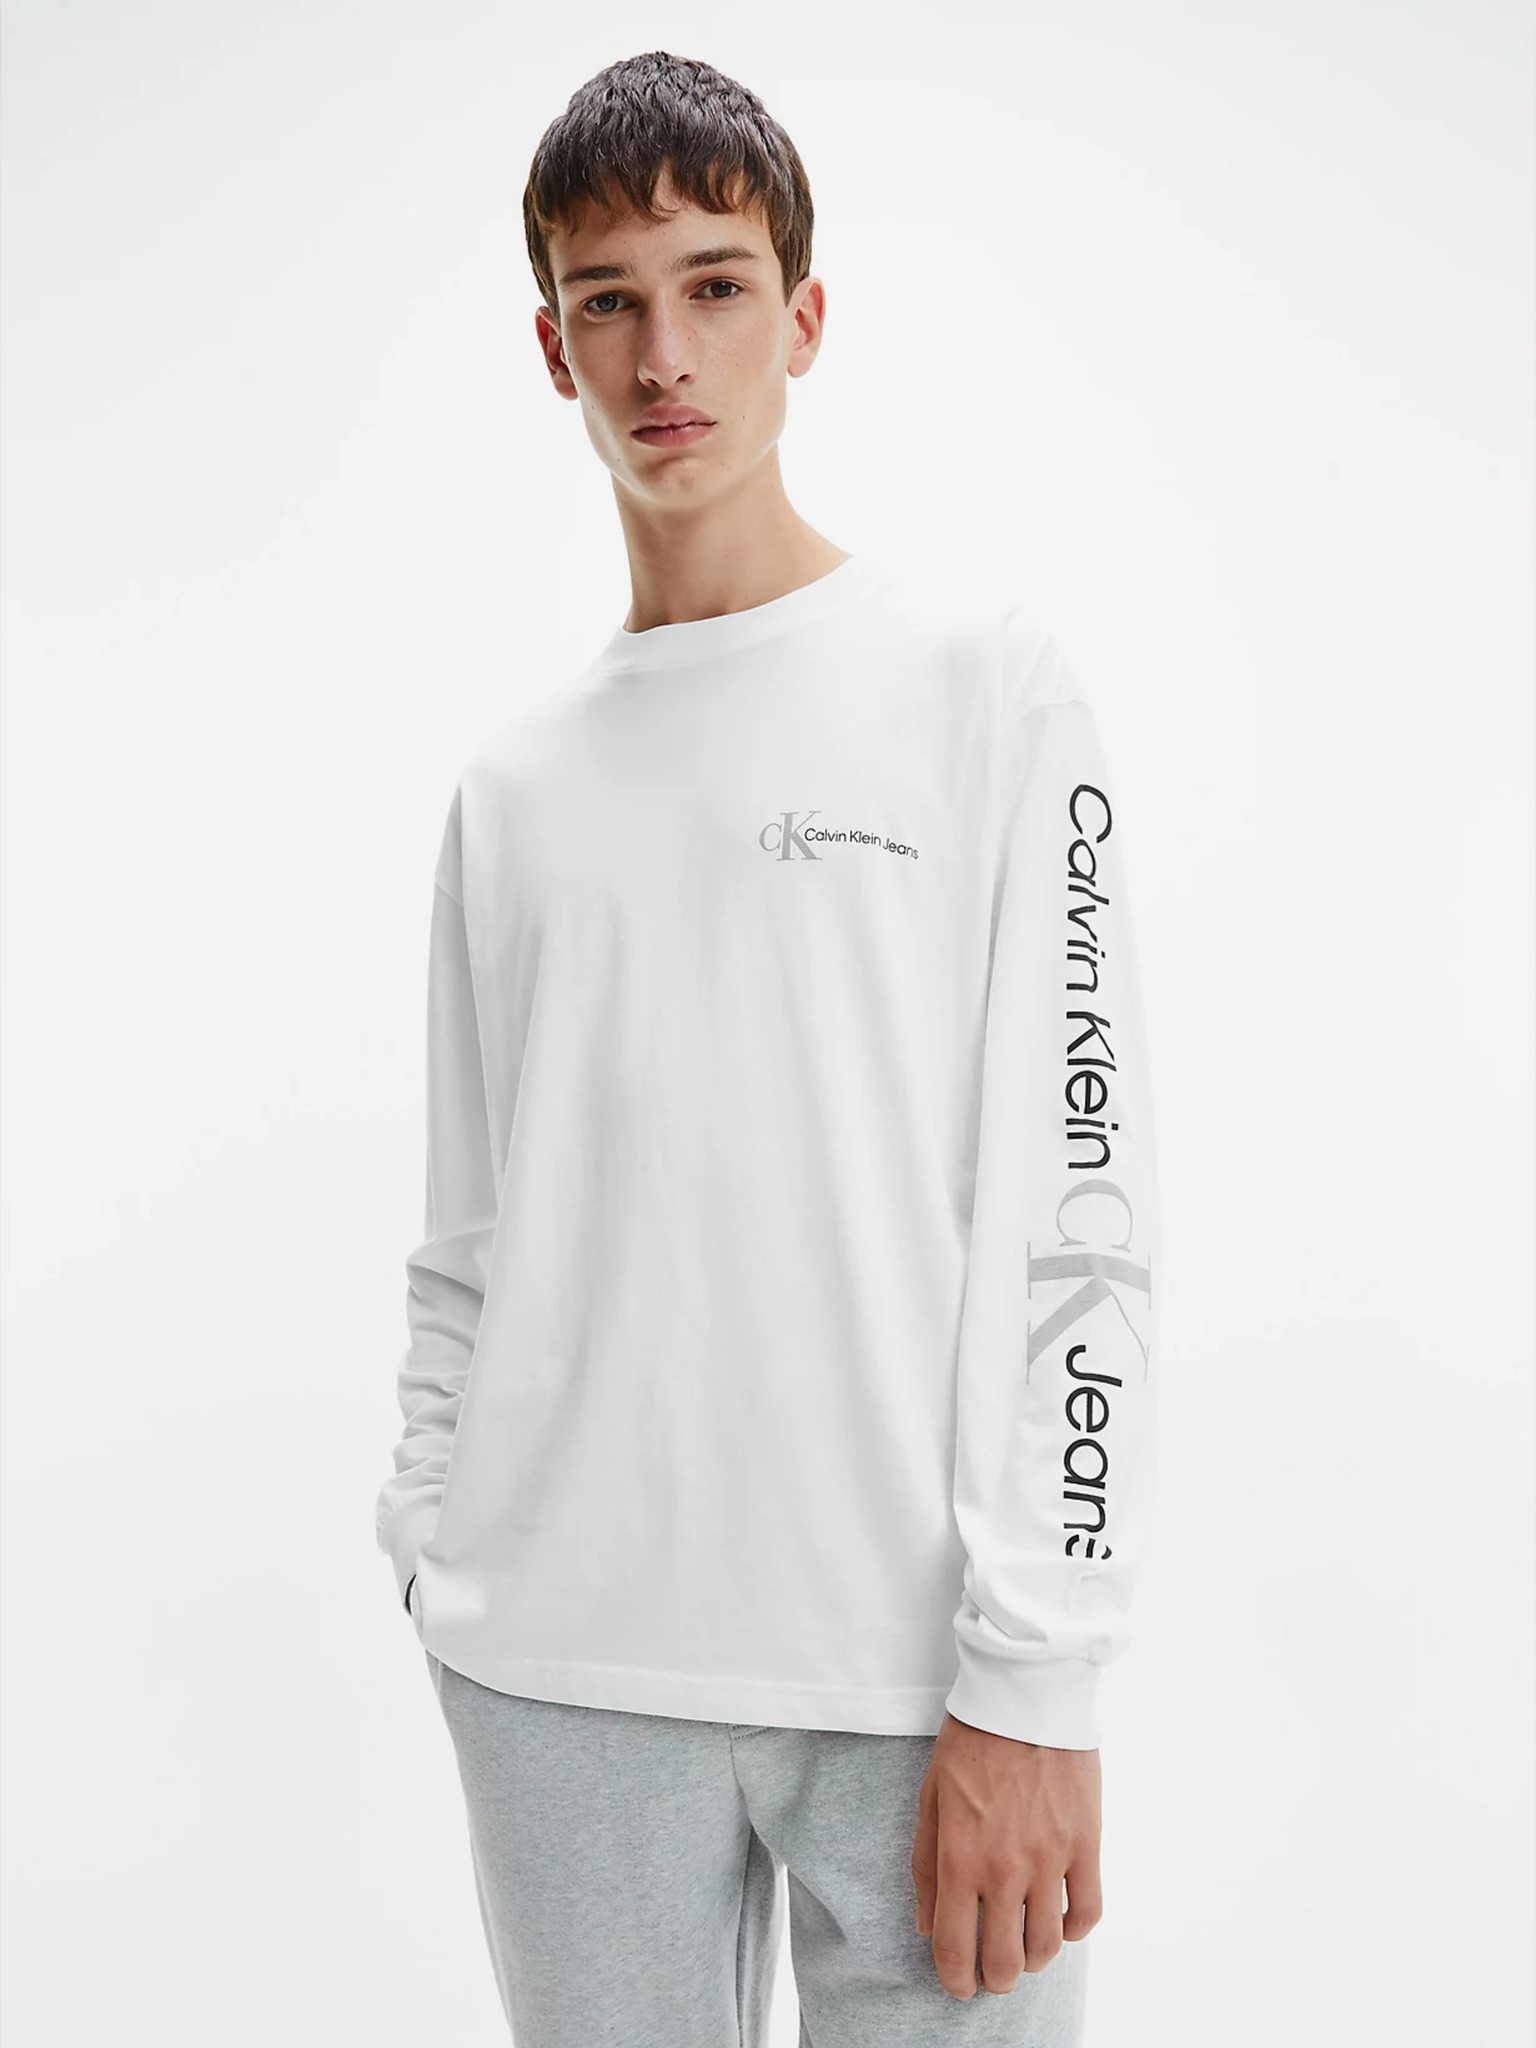 Calvin Klein - T-shirt